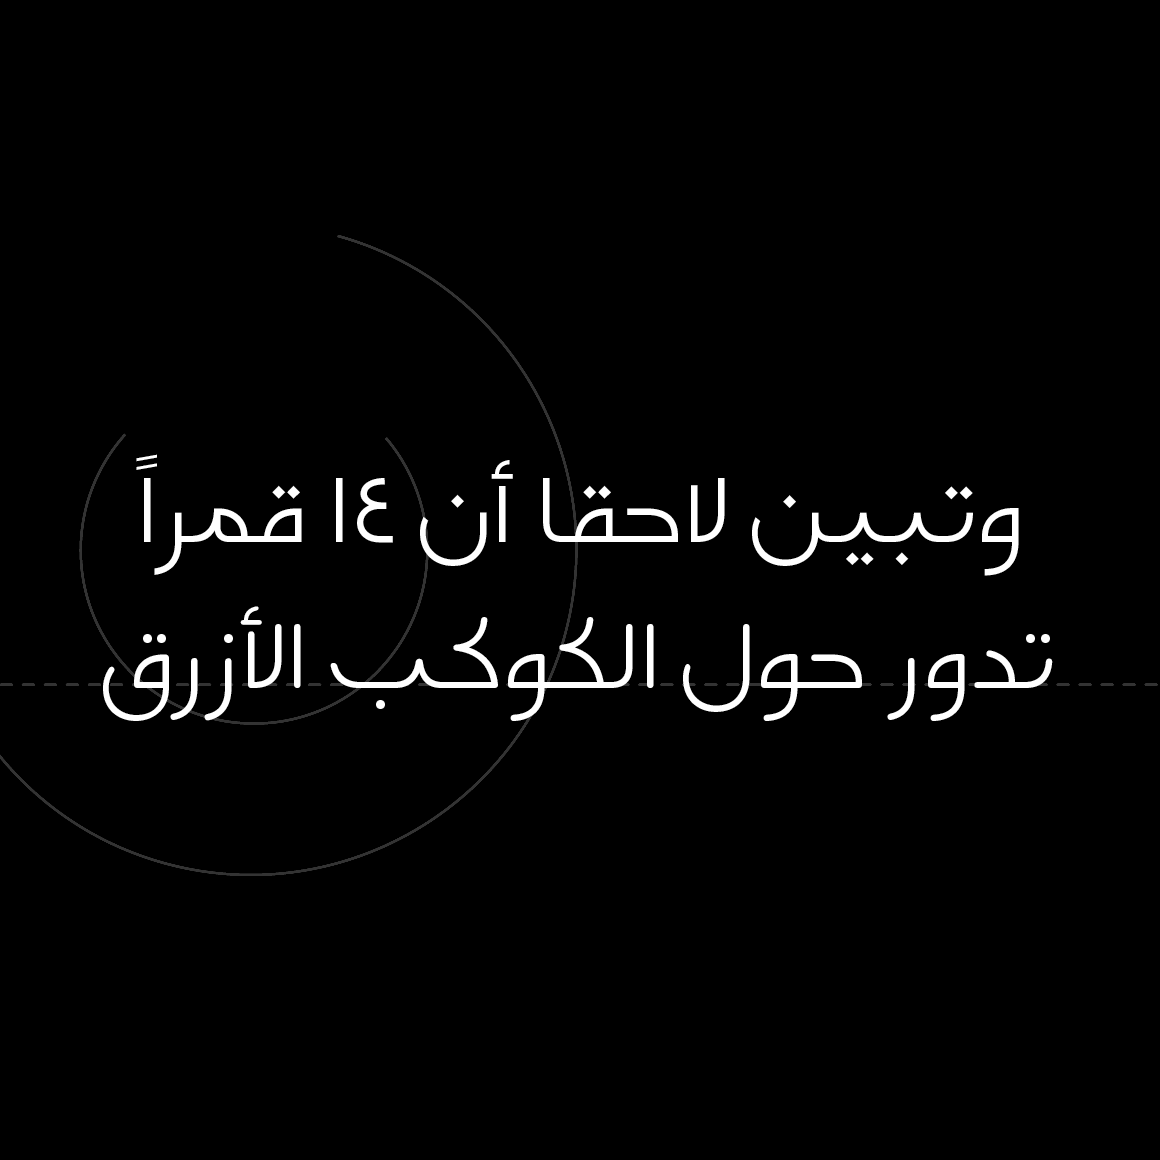 Falak - Arabic Font image.